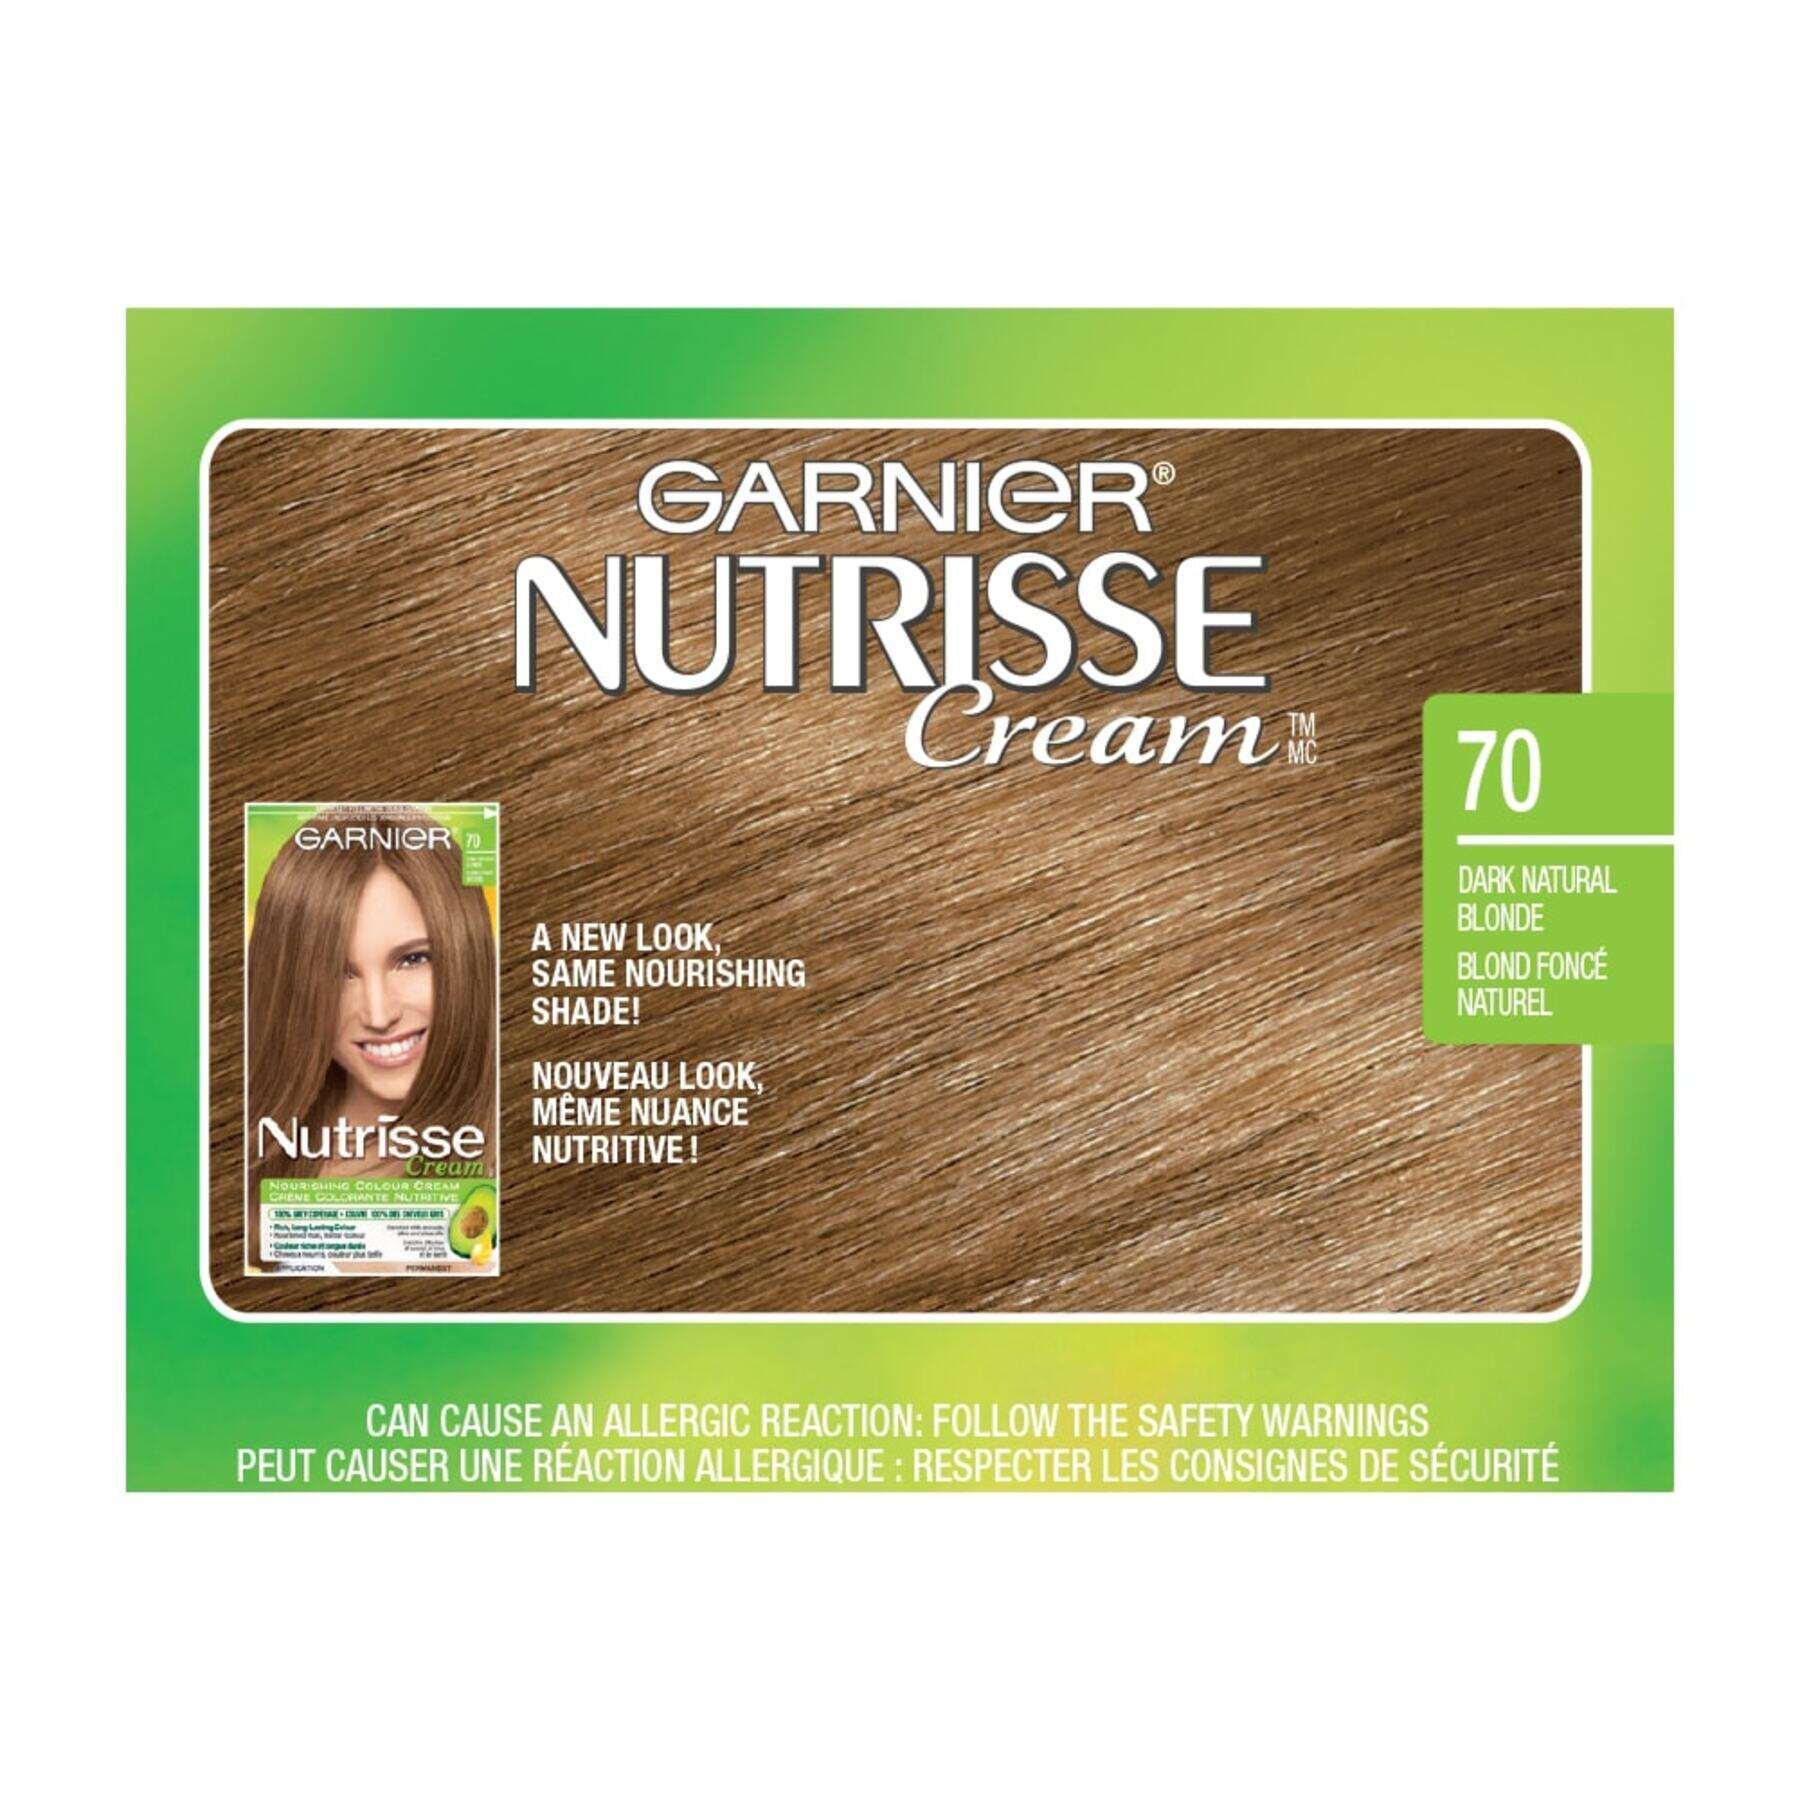 garnier hair dye nutrisse cream 70 dark natural blonde 0770103447209 swatch